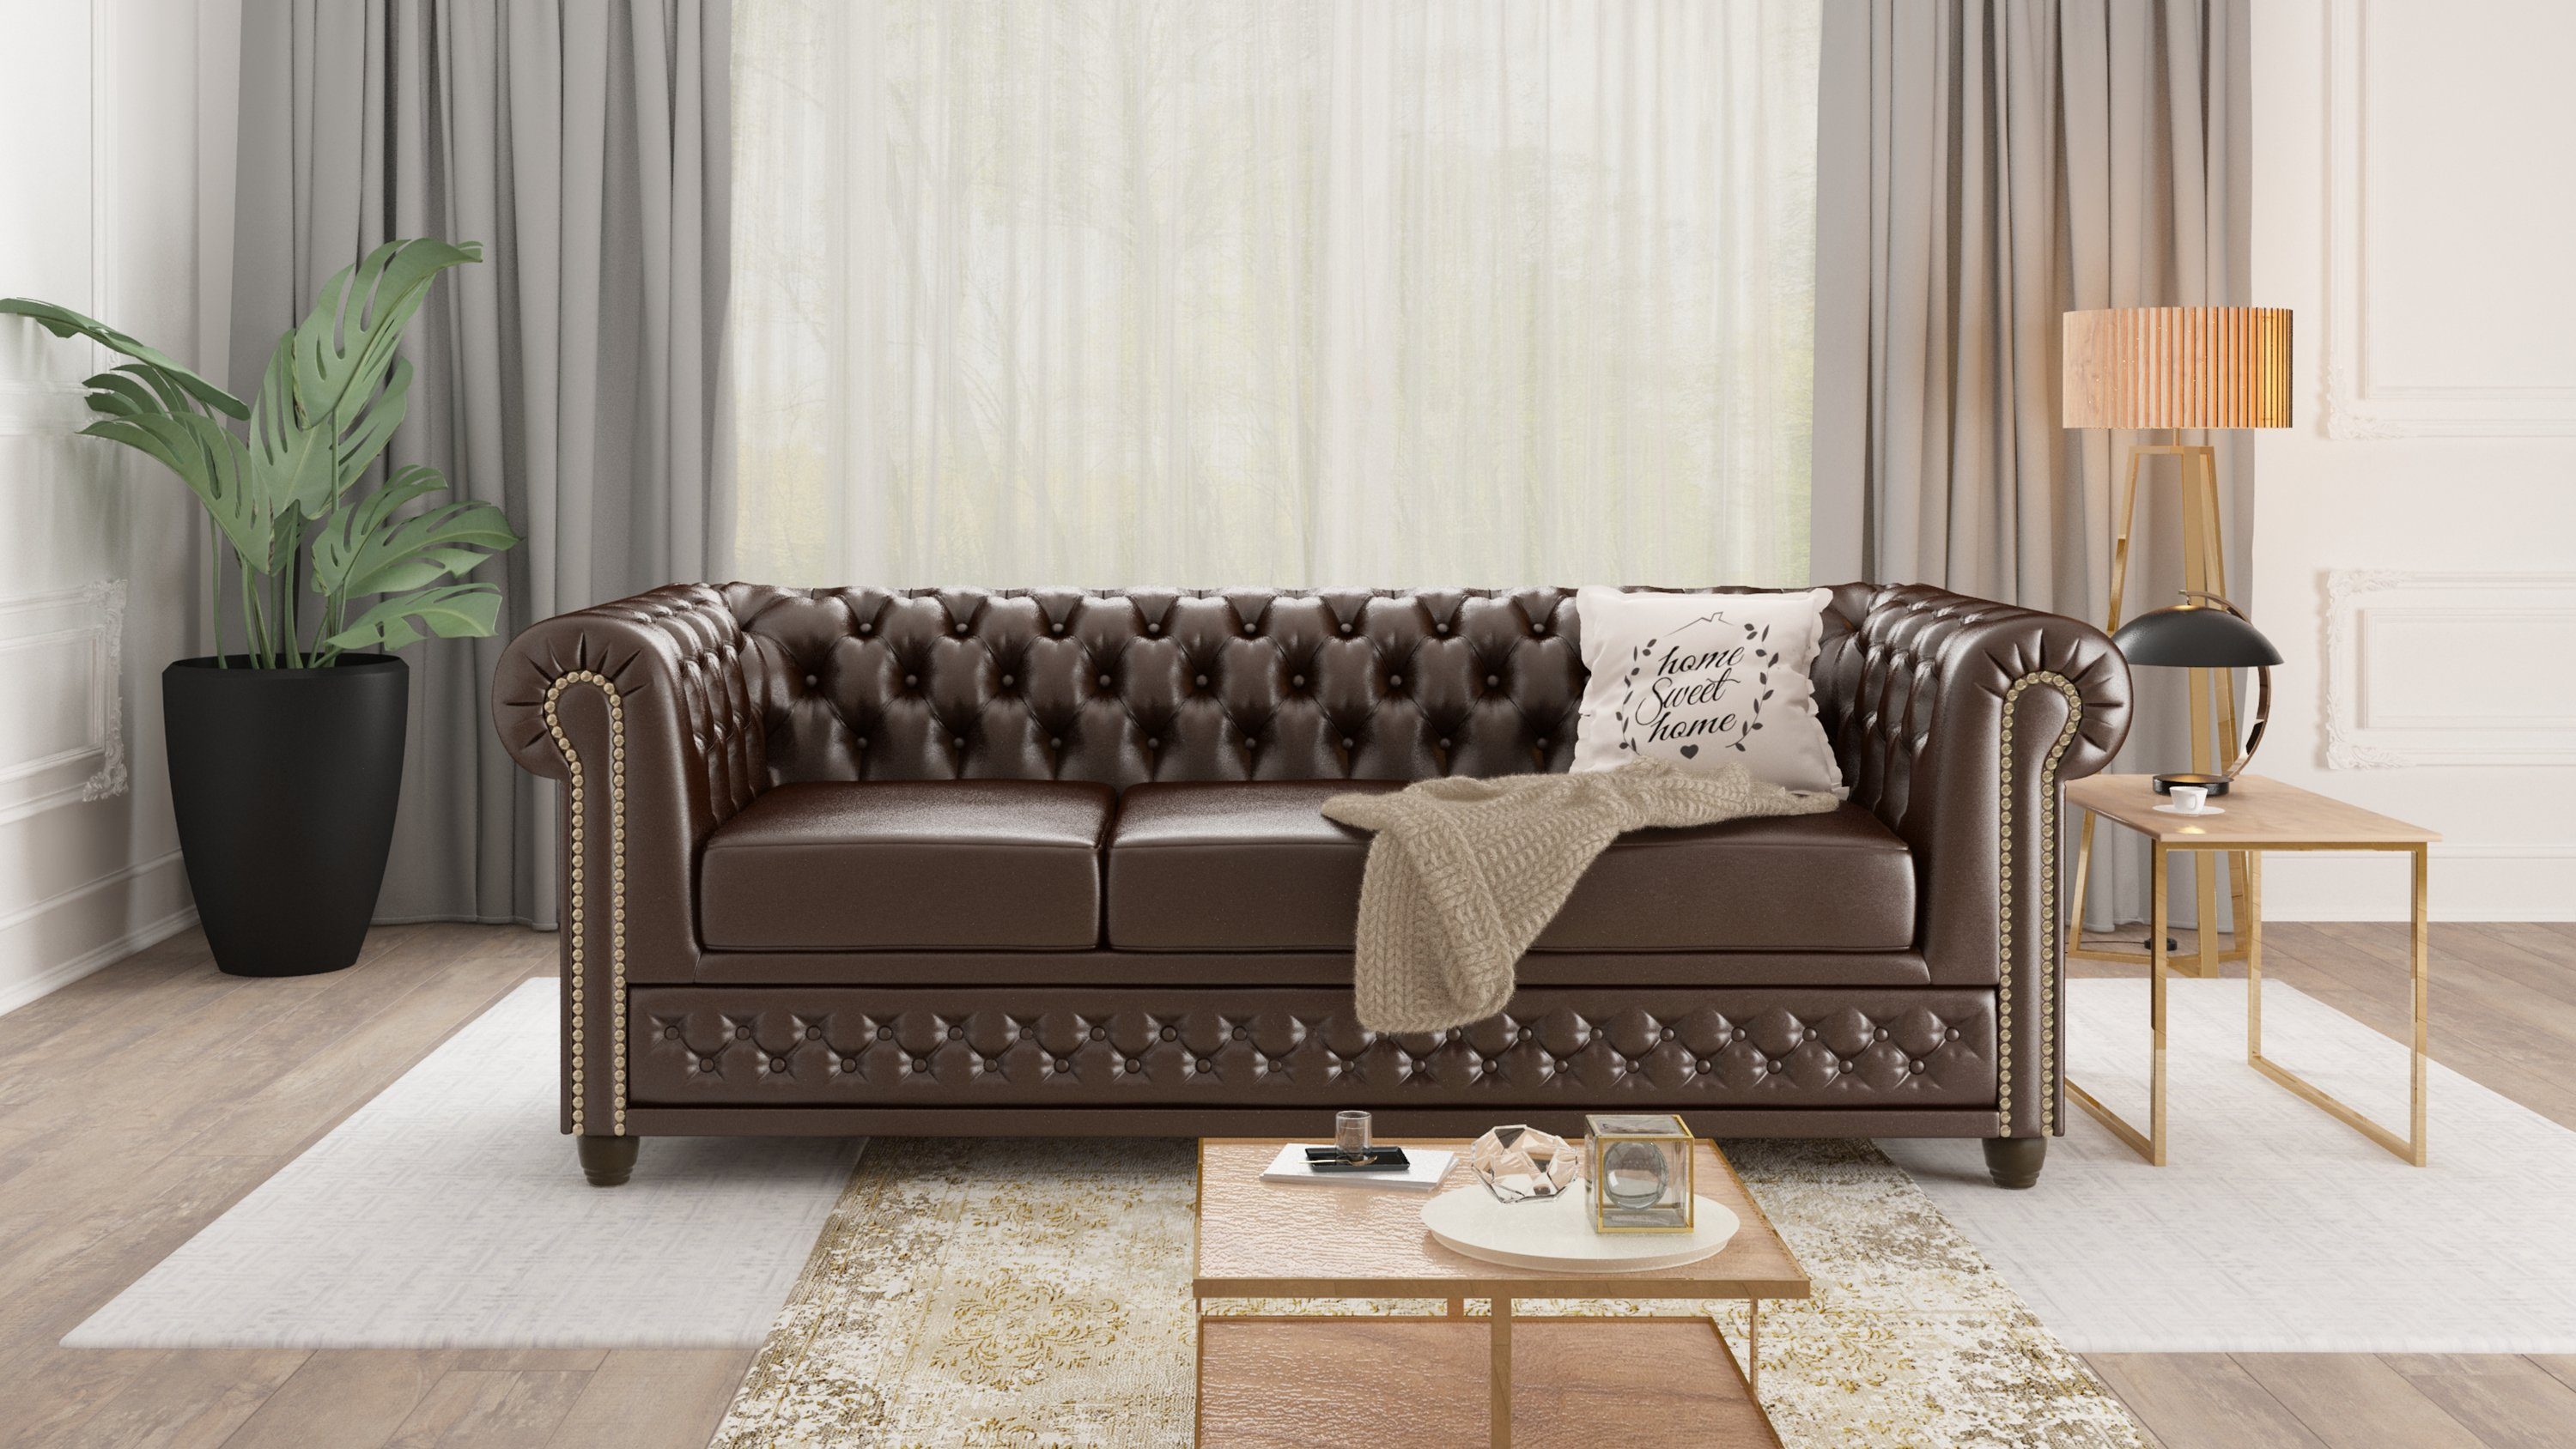 Jeff Sofa, S-Style Möbel mit Chesterfield Wellenfederung 3-Sitzer Braun